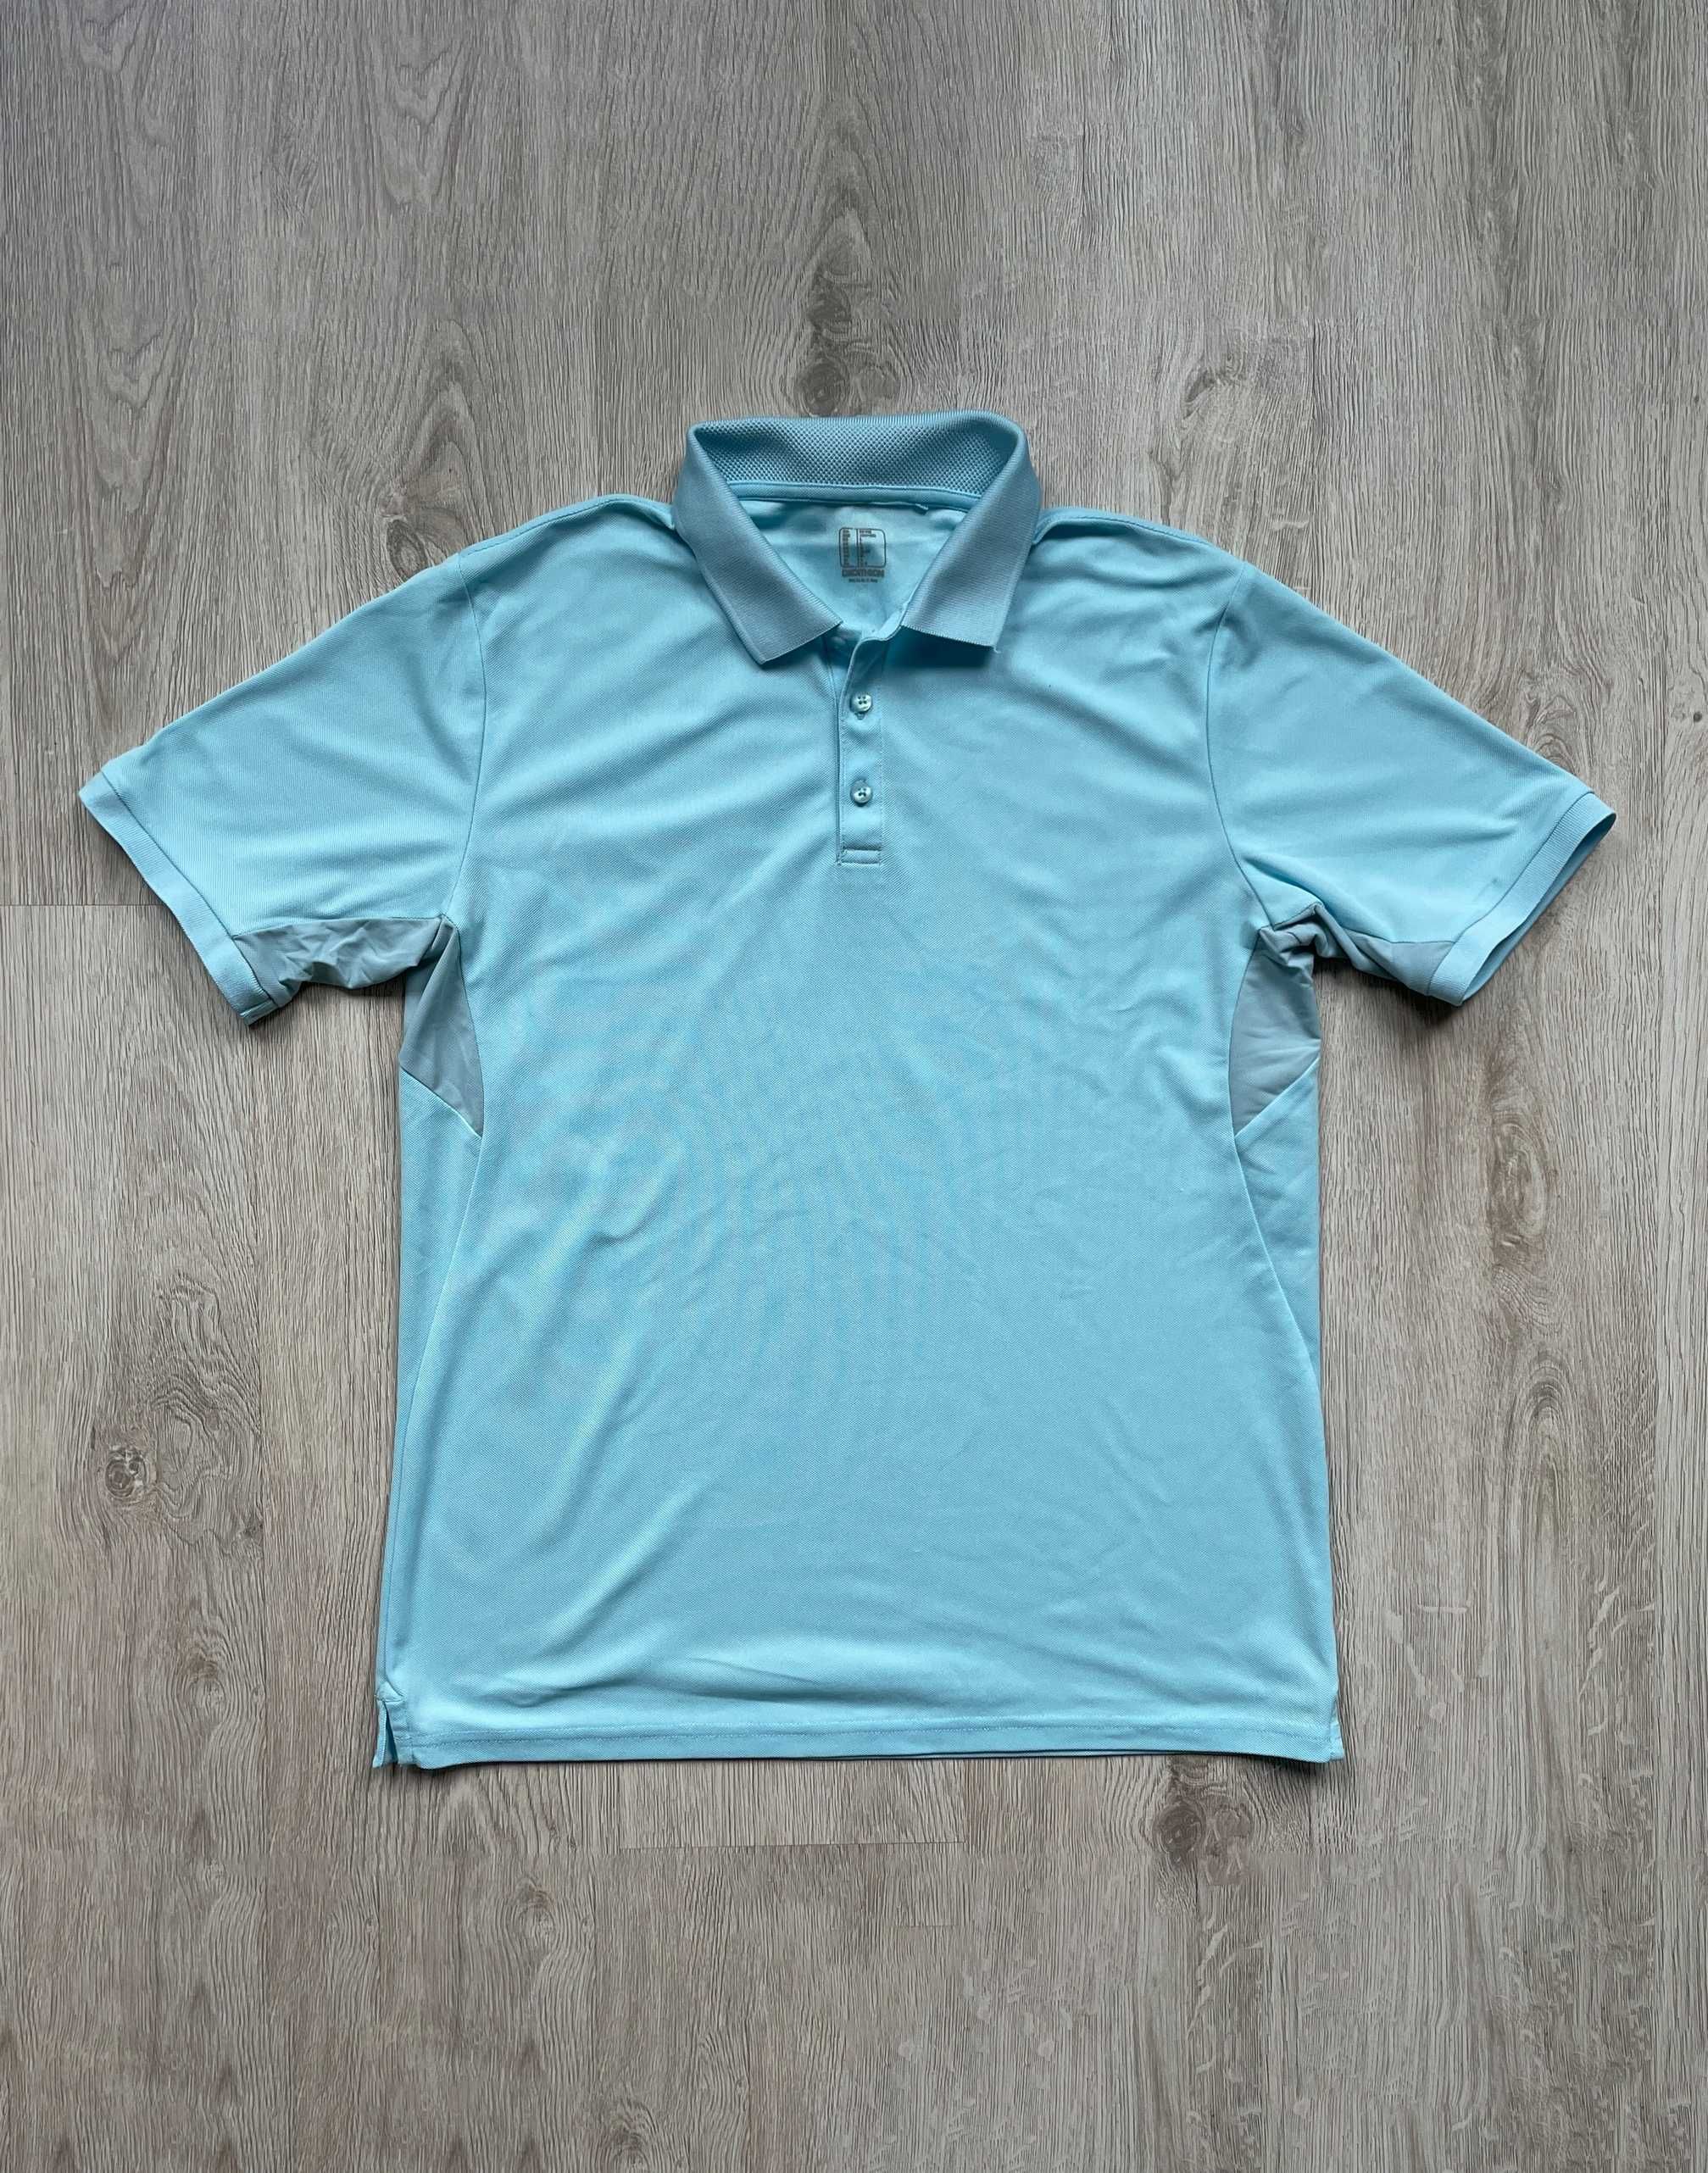 Koszulka polo męska jasnoniebieska Decathlon Inesis WW500 rozmiar L